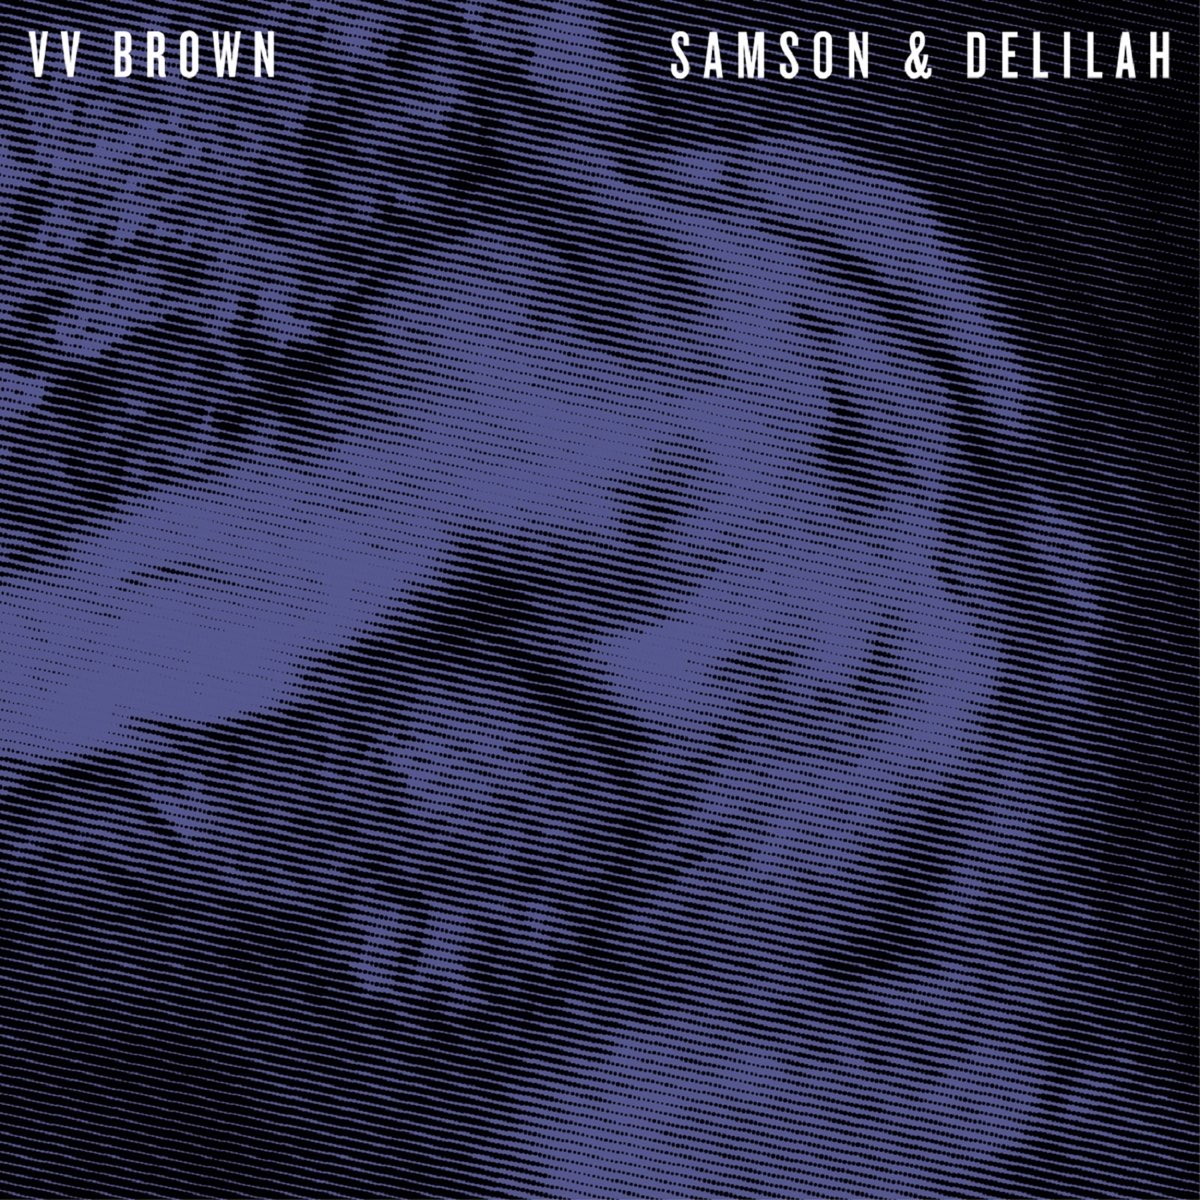 V V Brown — Igneous cover artwork